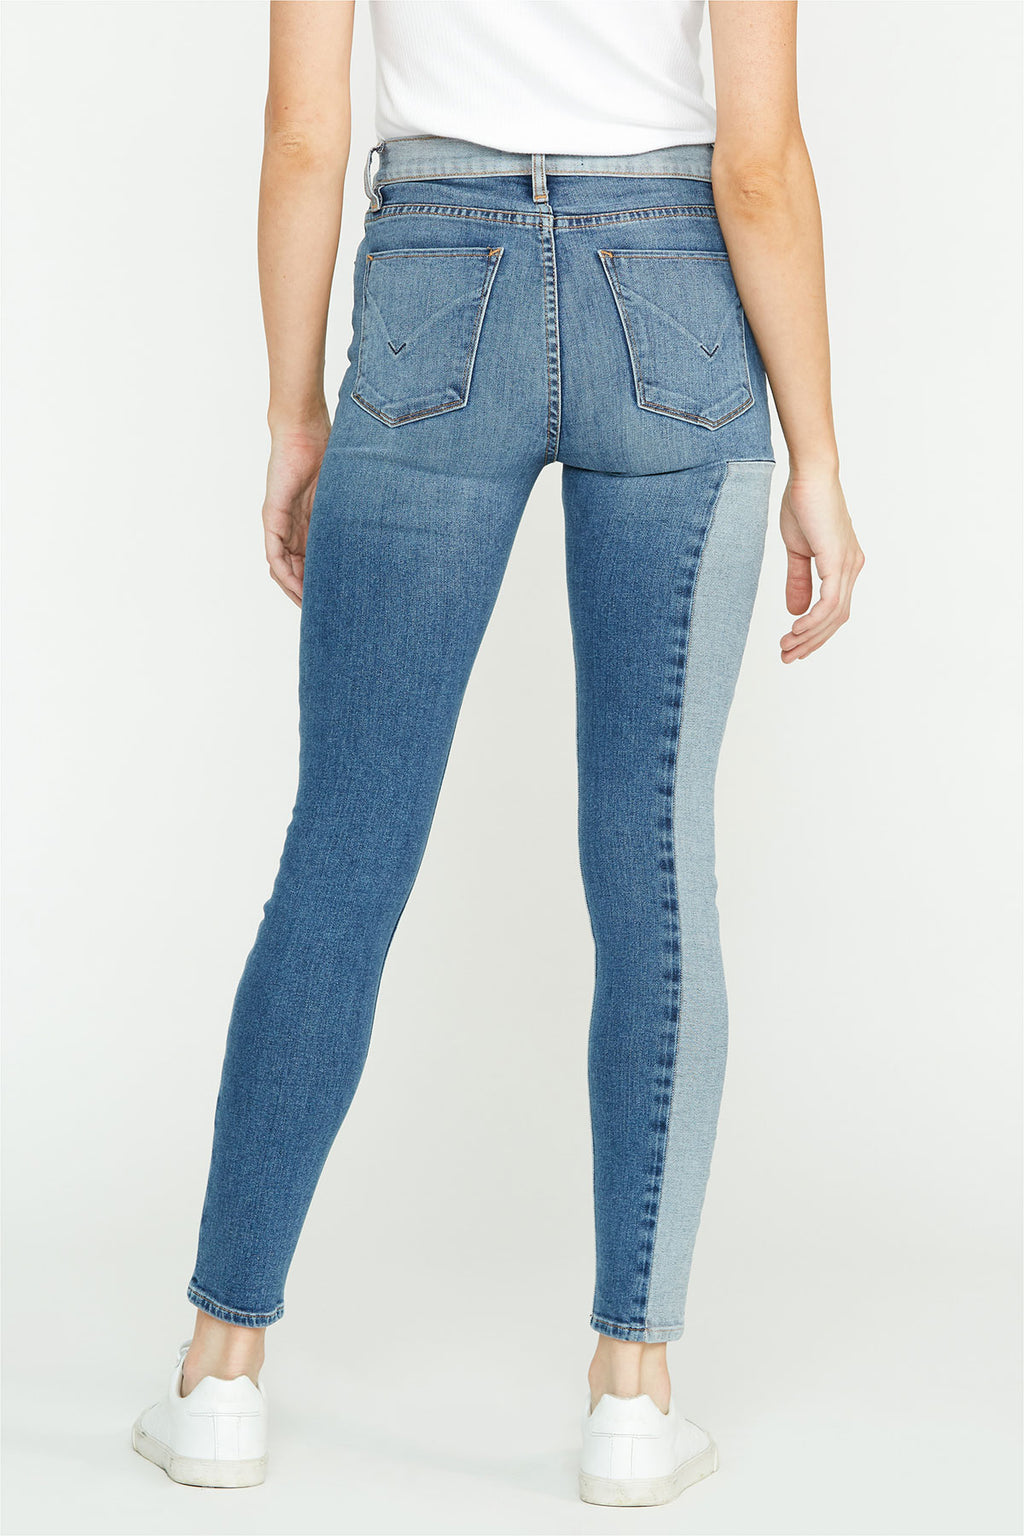 Women's Denim Skinny – Hudson Jeans